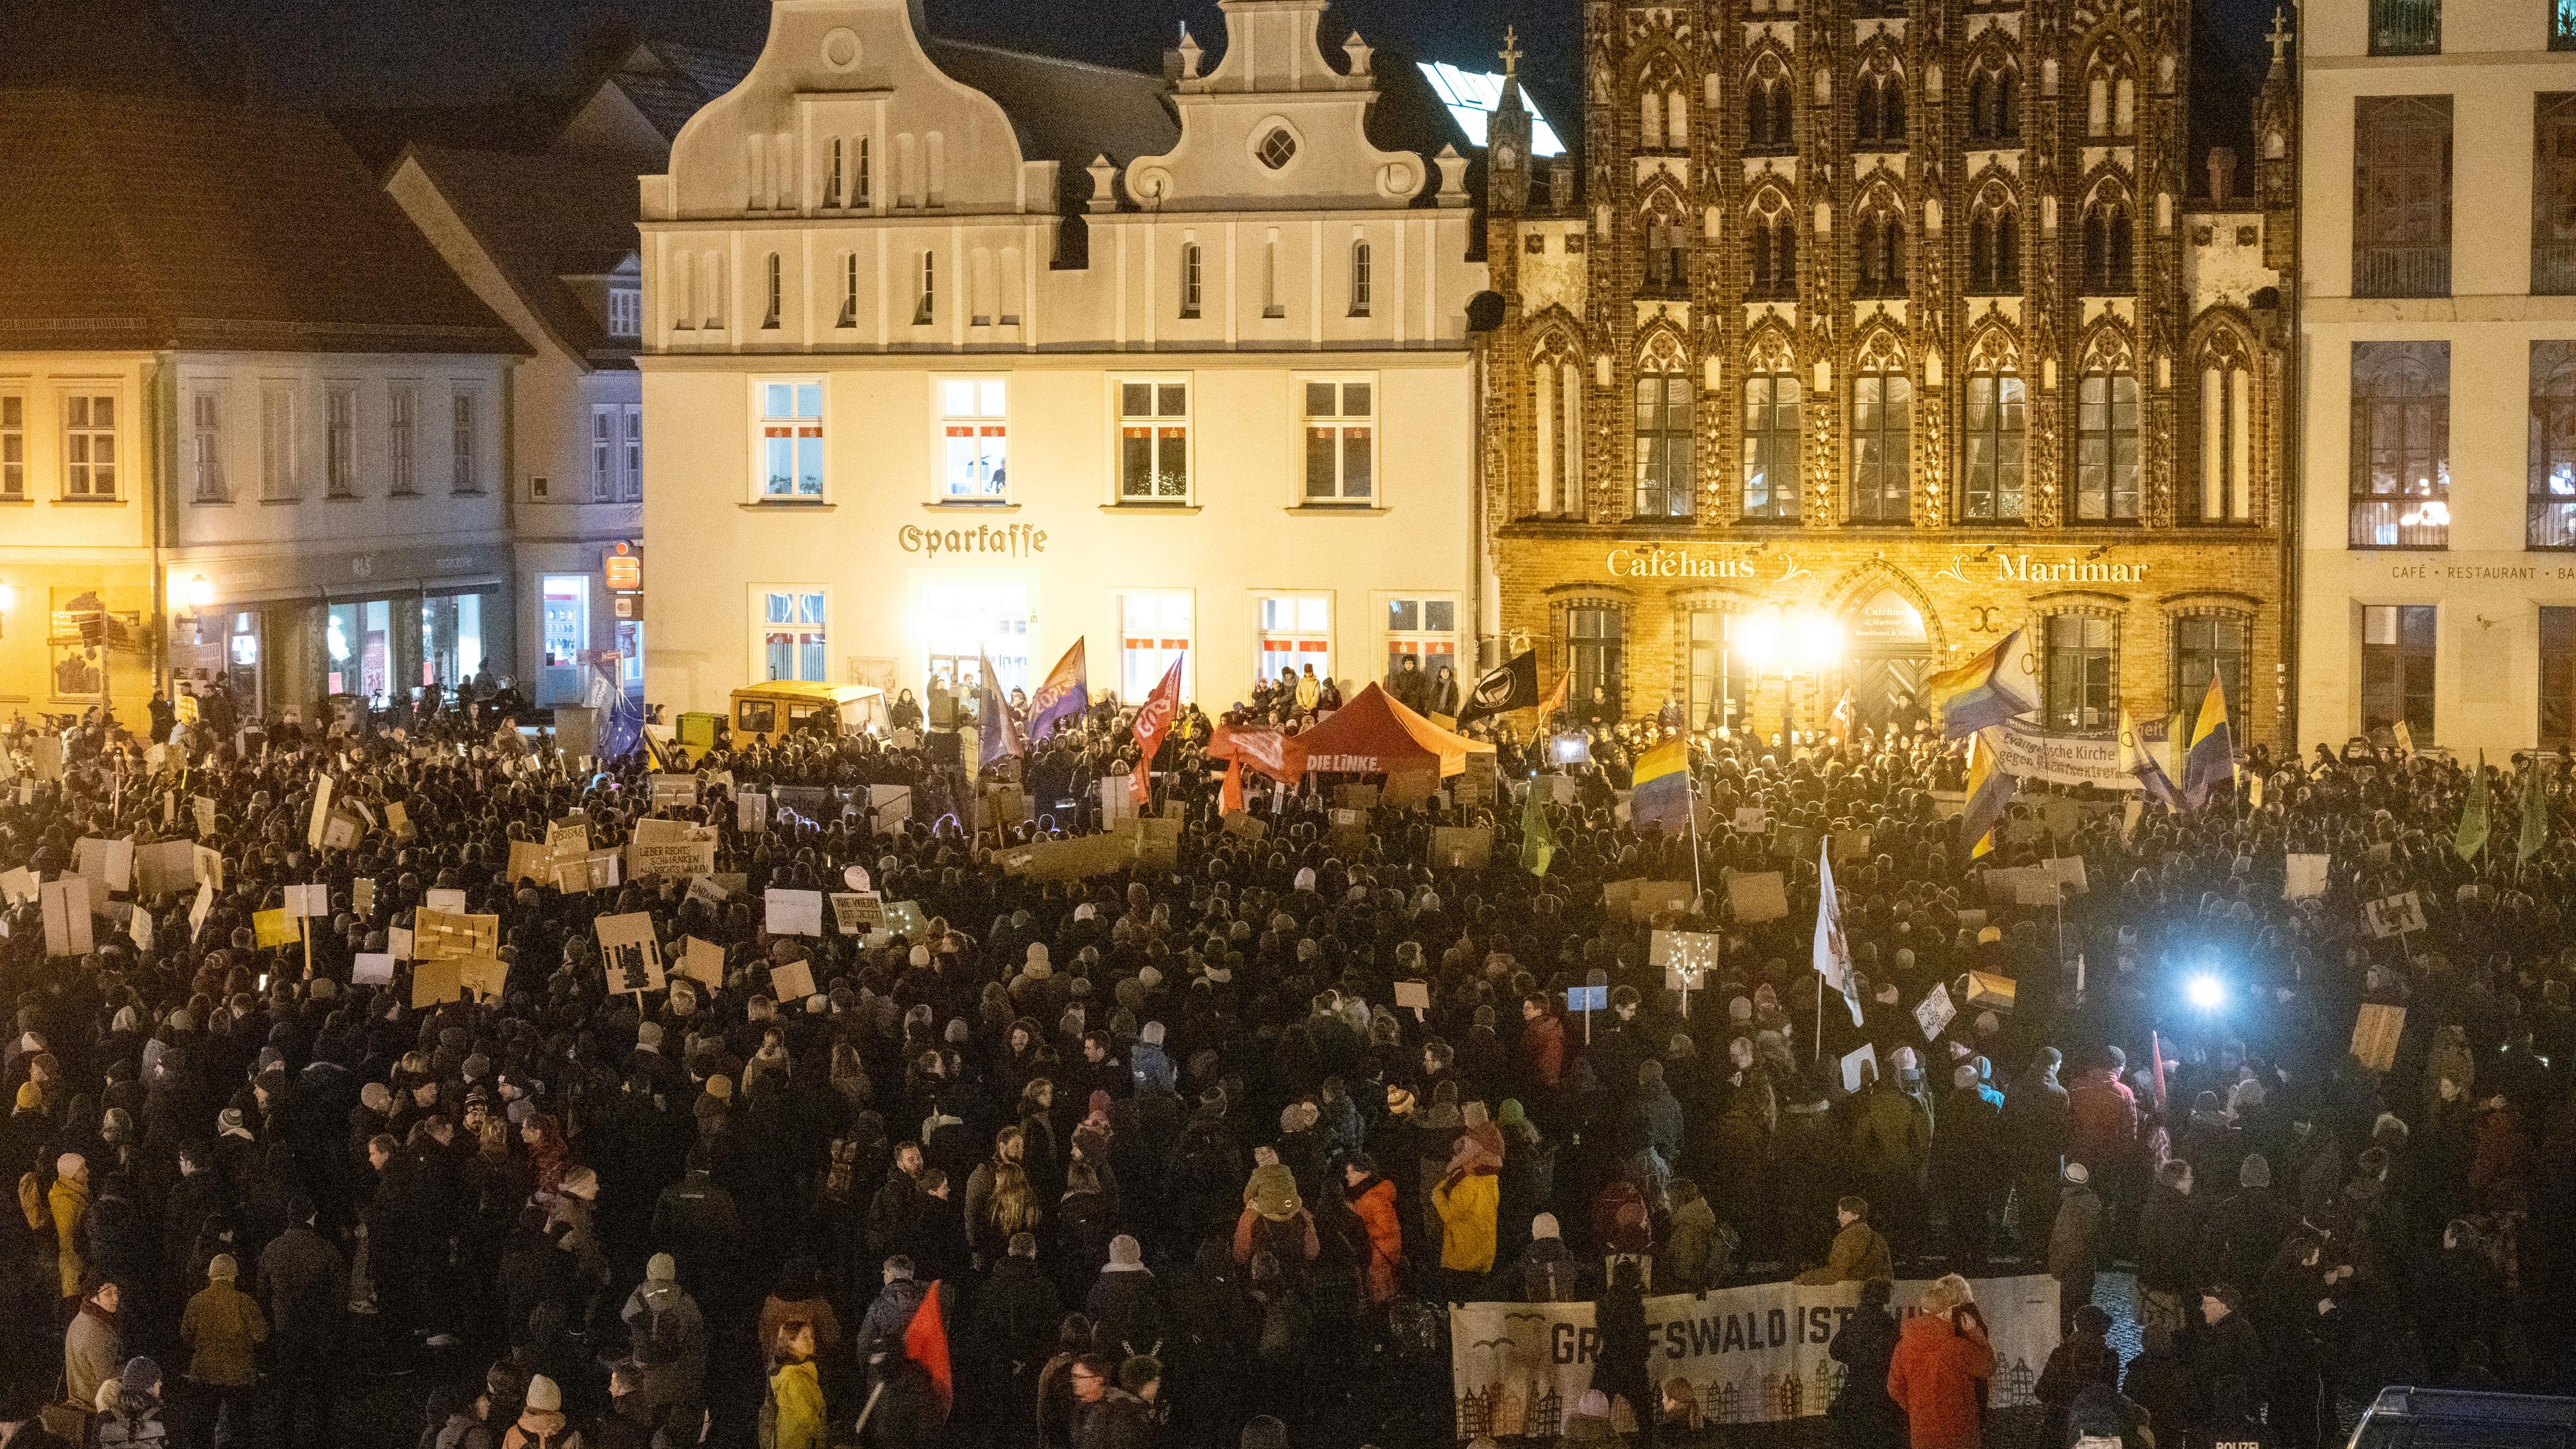 Mecklenburg-Vorpommern, Greifswald: Zahlreiche Menschen stehen auf dem Markt und demonstrieren gegen die AfD und gegen Rechtsextremismus.